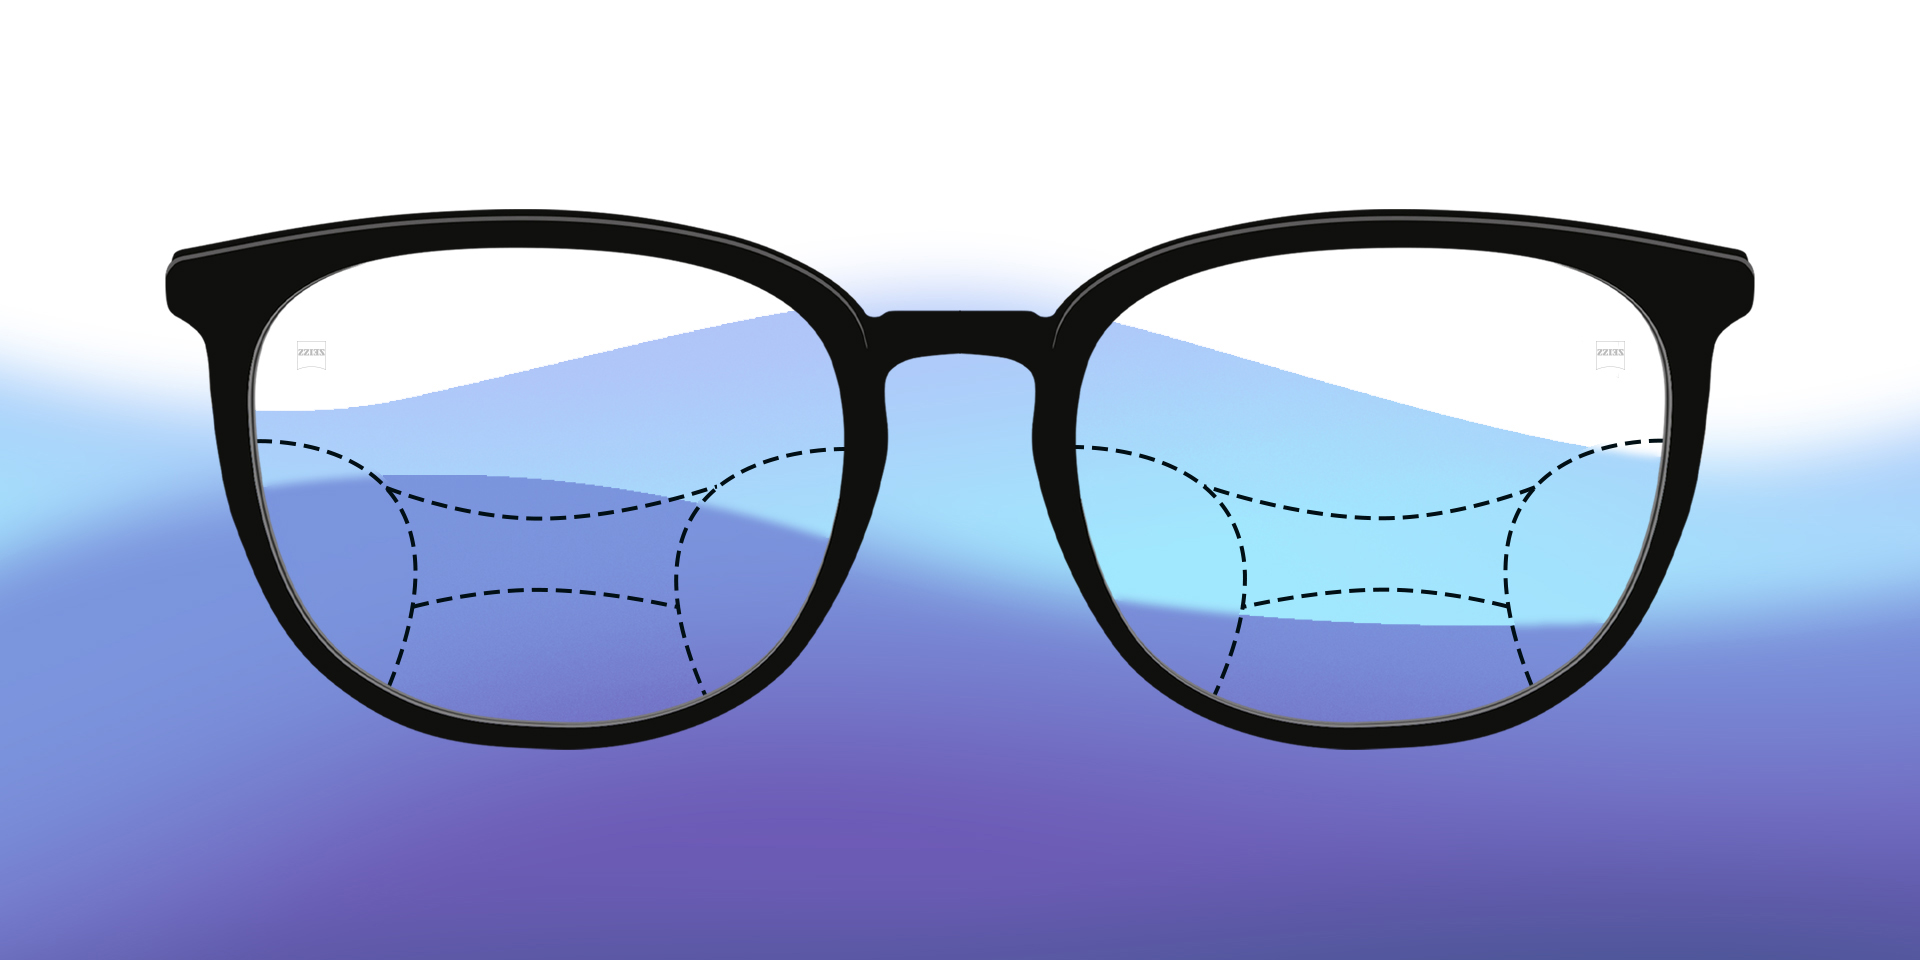 Een afbeelding van geïllustreerde progressieve brillenglazen tegen een kleurrijke achtergrond.